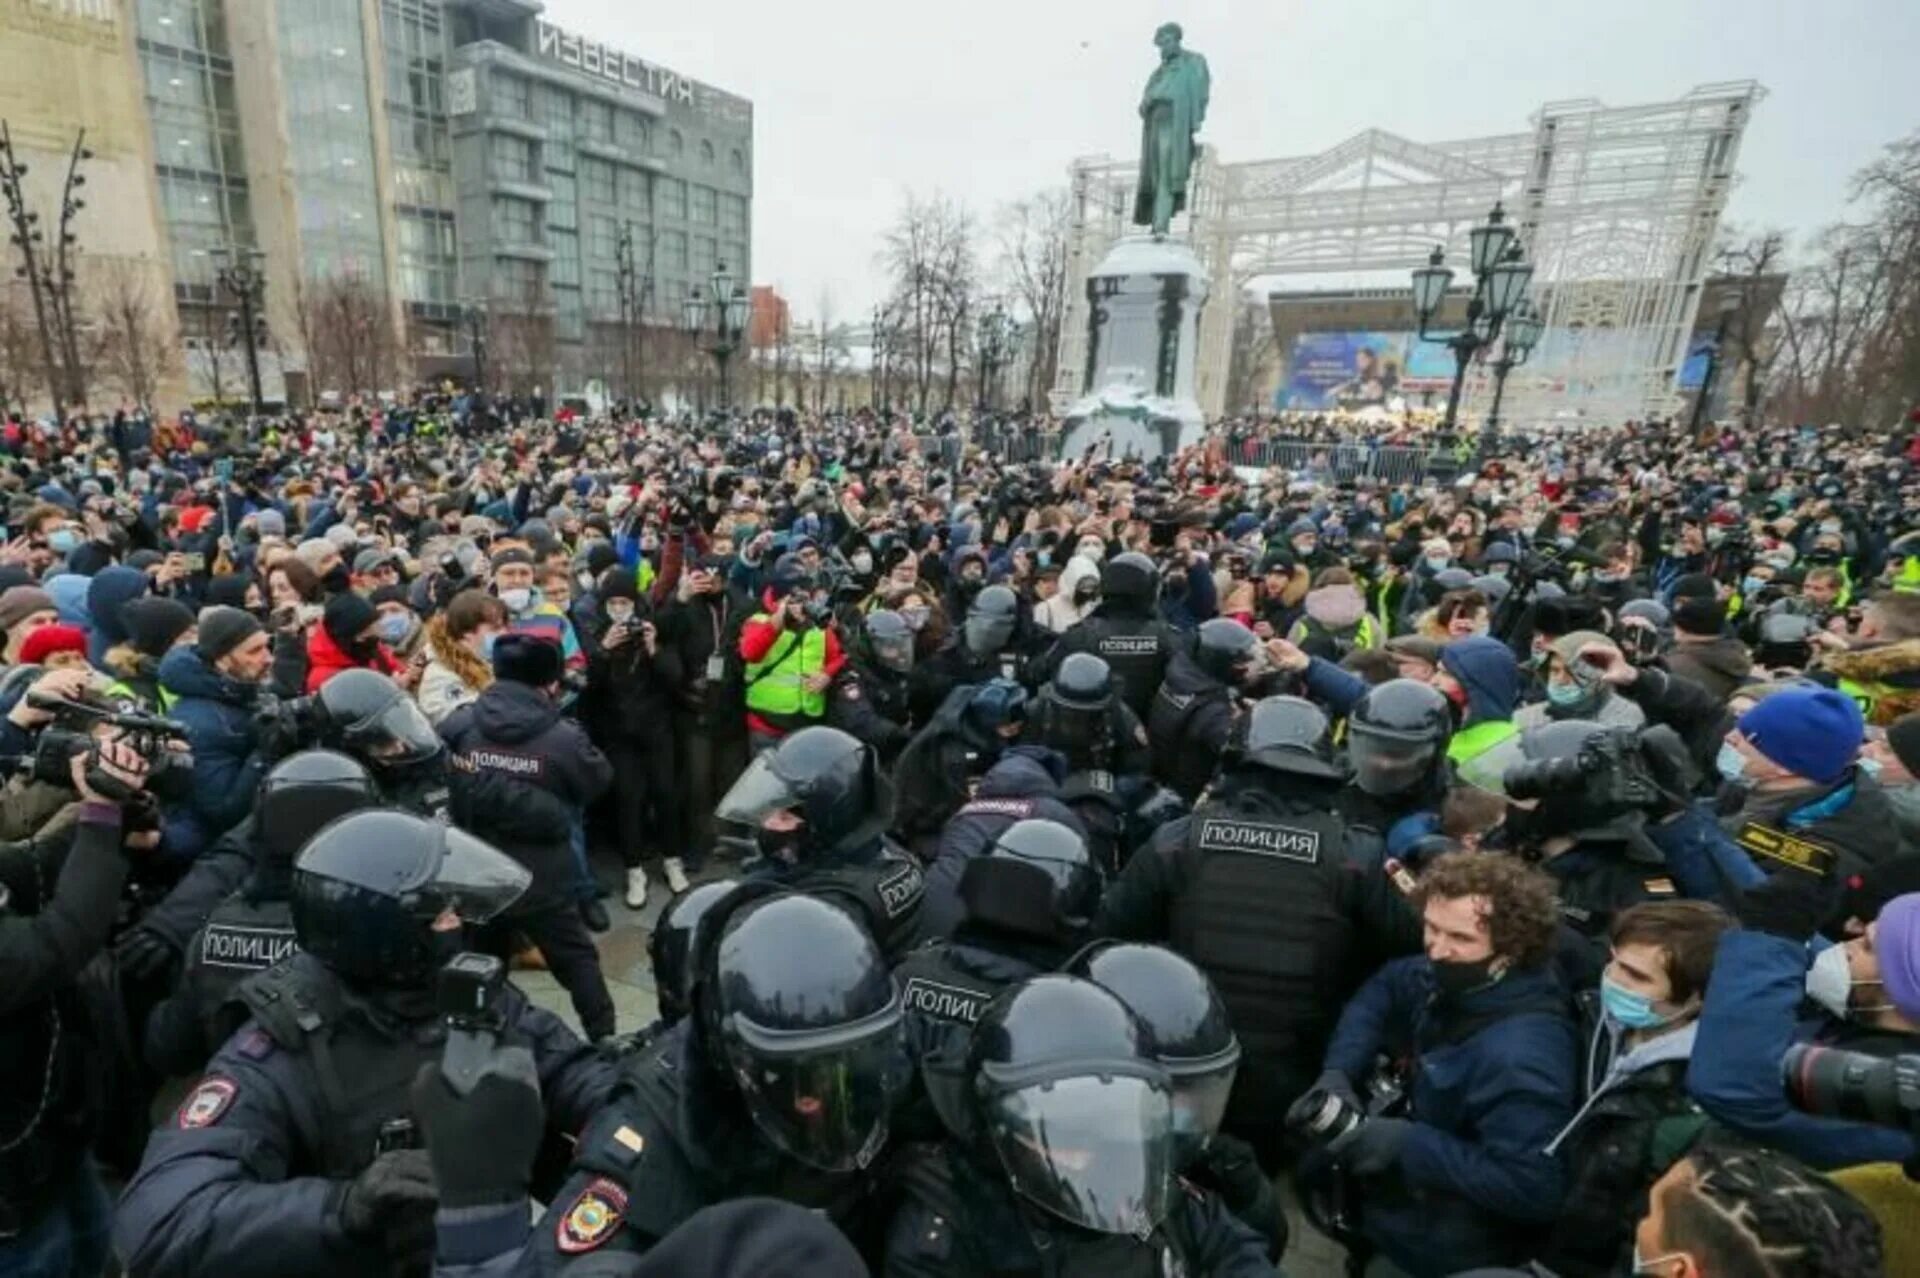 Как проходят митинги. Протесты в Москве 23 января 2021. Митинг Навального 23 января 2021 Москва. Митинг за Навального в Москве 2021. Митинги в России 2021 Навальный.